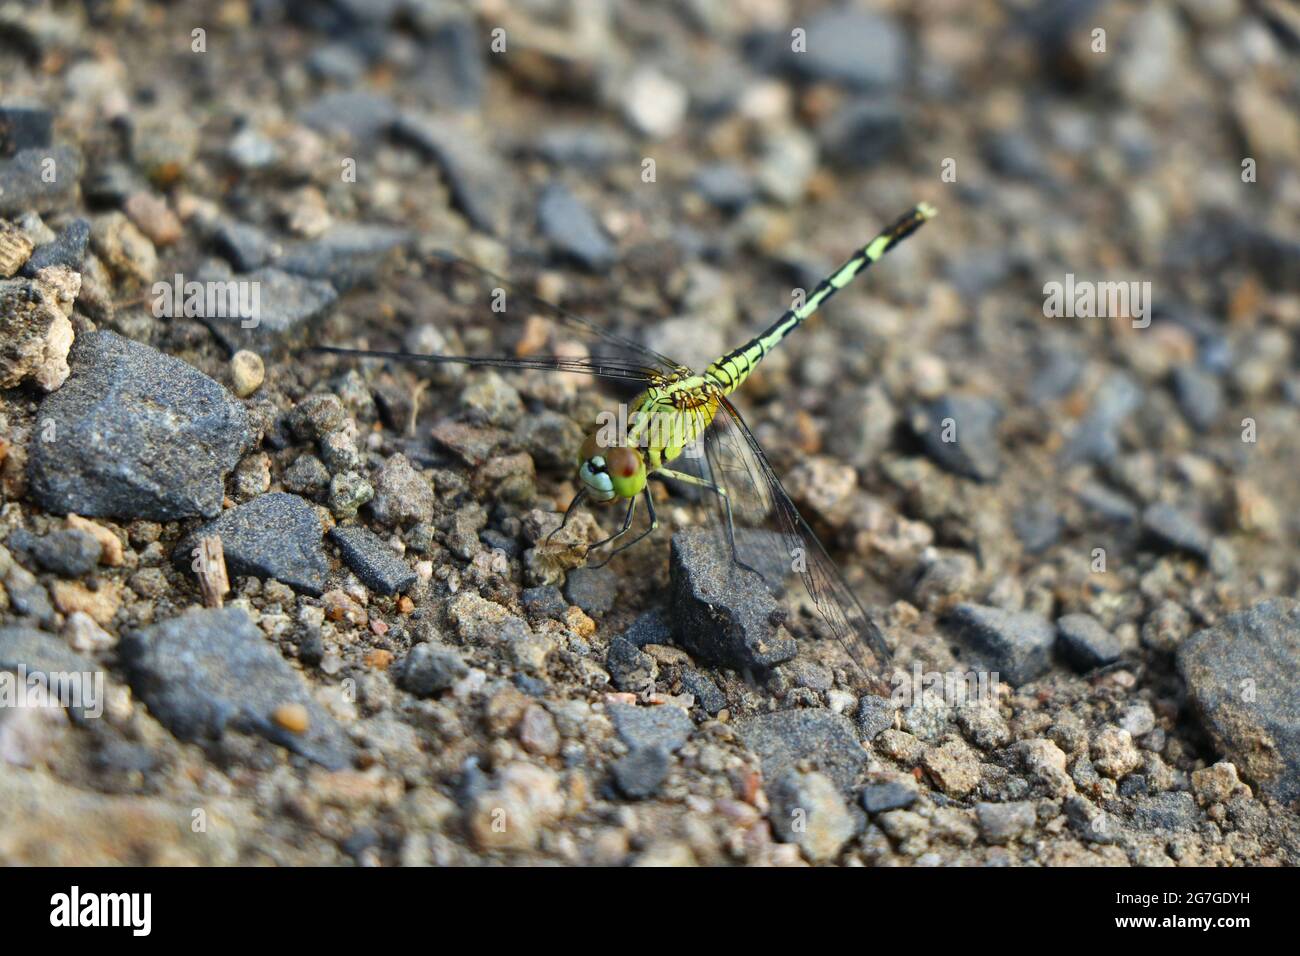 Orthetrum sabina, le skimmer mince ou faucon vert de marais, est une espèce de libellule de la famille des Libellulida. Nanded District, Maharashtra, Inde Banque D'Images